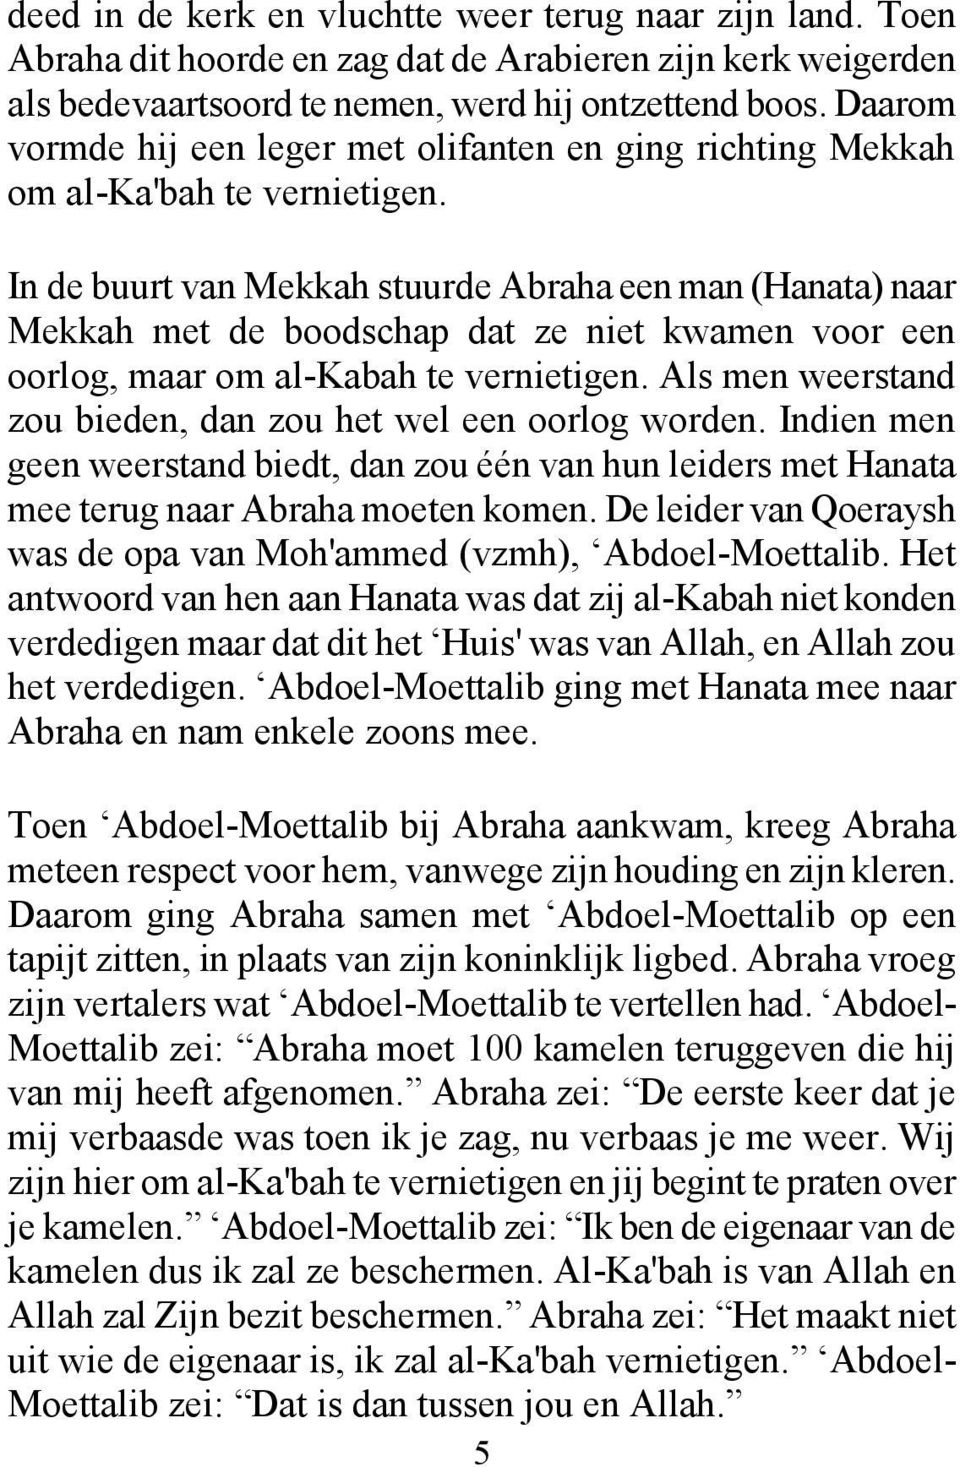 In de buurt van Mekkah stuurde Abraha een man (Hanata) naar Mekkah met de boodschap dat ze niet kwamen voor een oorlog, maar om al-kabah te vernietigen.